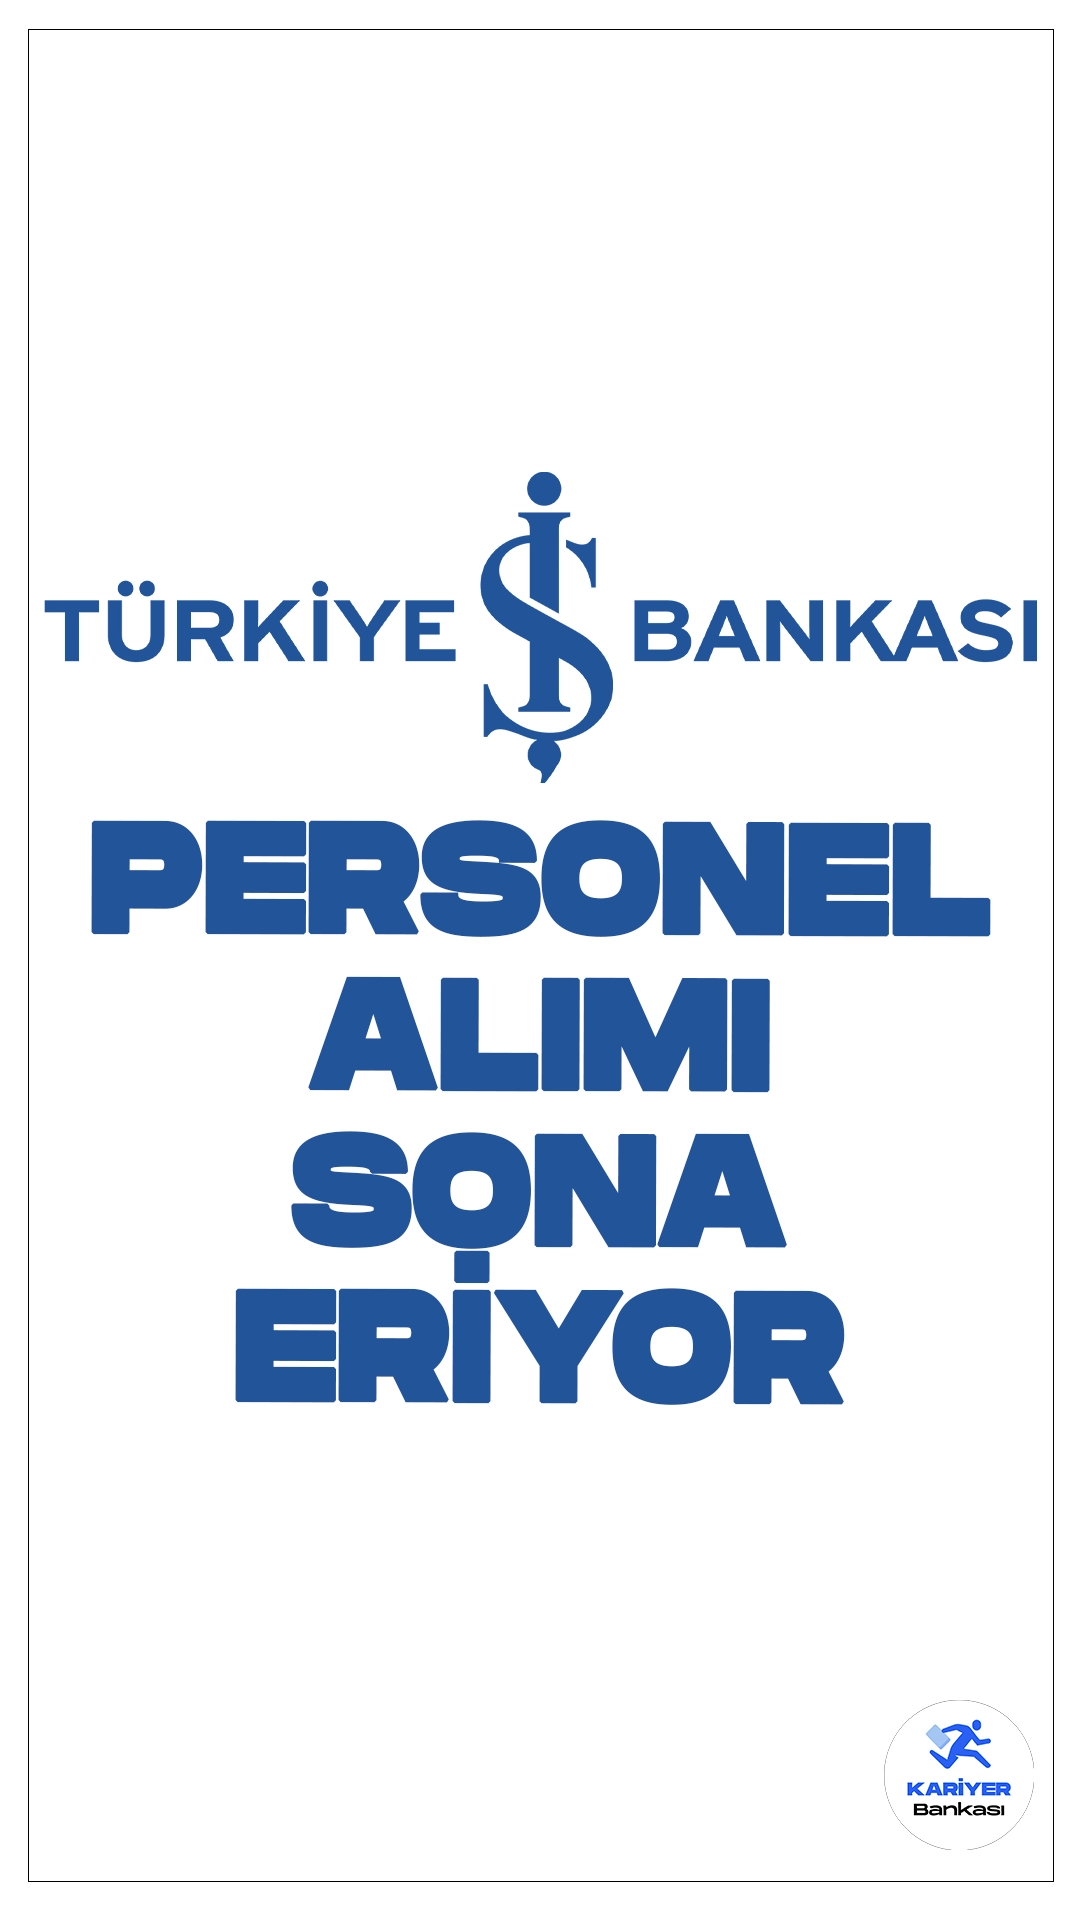 İş Bankası Teknisyen Alımı Başvuruları Sona Eriyor.Türkiye İş Bankası sayfasından yayımlanan duyuruya göre, ön lisans mezunlarından teknisyen alımı yapılacak. Başvurular İş Bankası sayfası üzerinden online olarak gerçekleştirilecek. Başvuru işlemleri yarın(19 Haziran) Başvuru yapacak adayların belitilen şartları dikkatle incelemesi gerekmektedir. İşte şartlar ve başvuru sayfası...